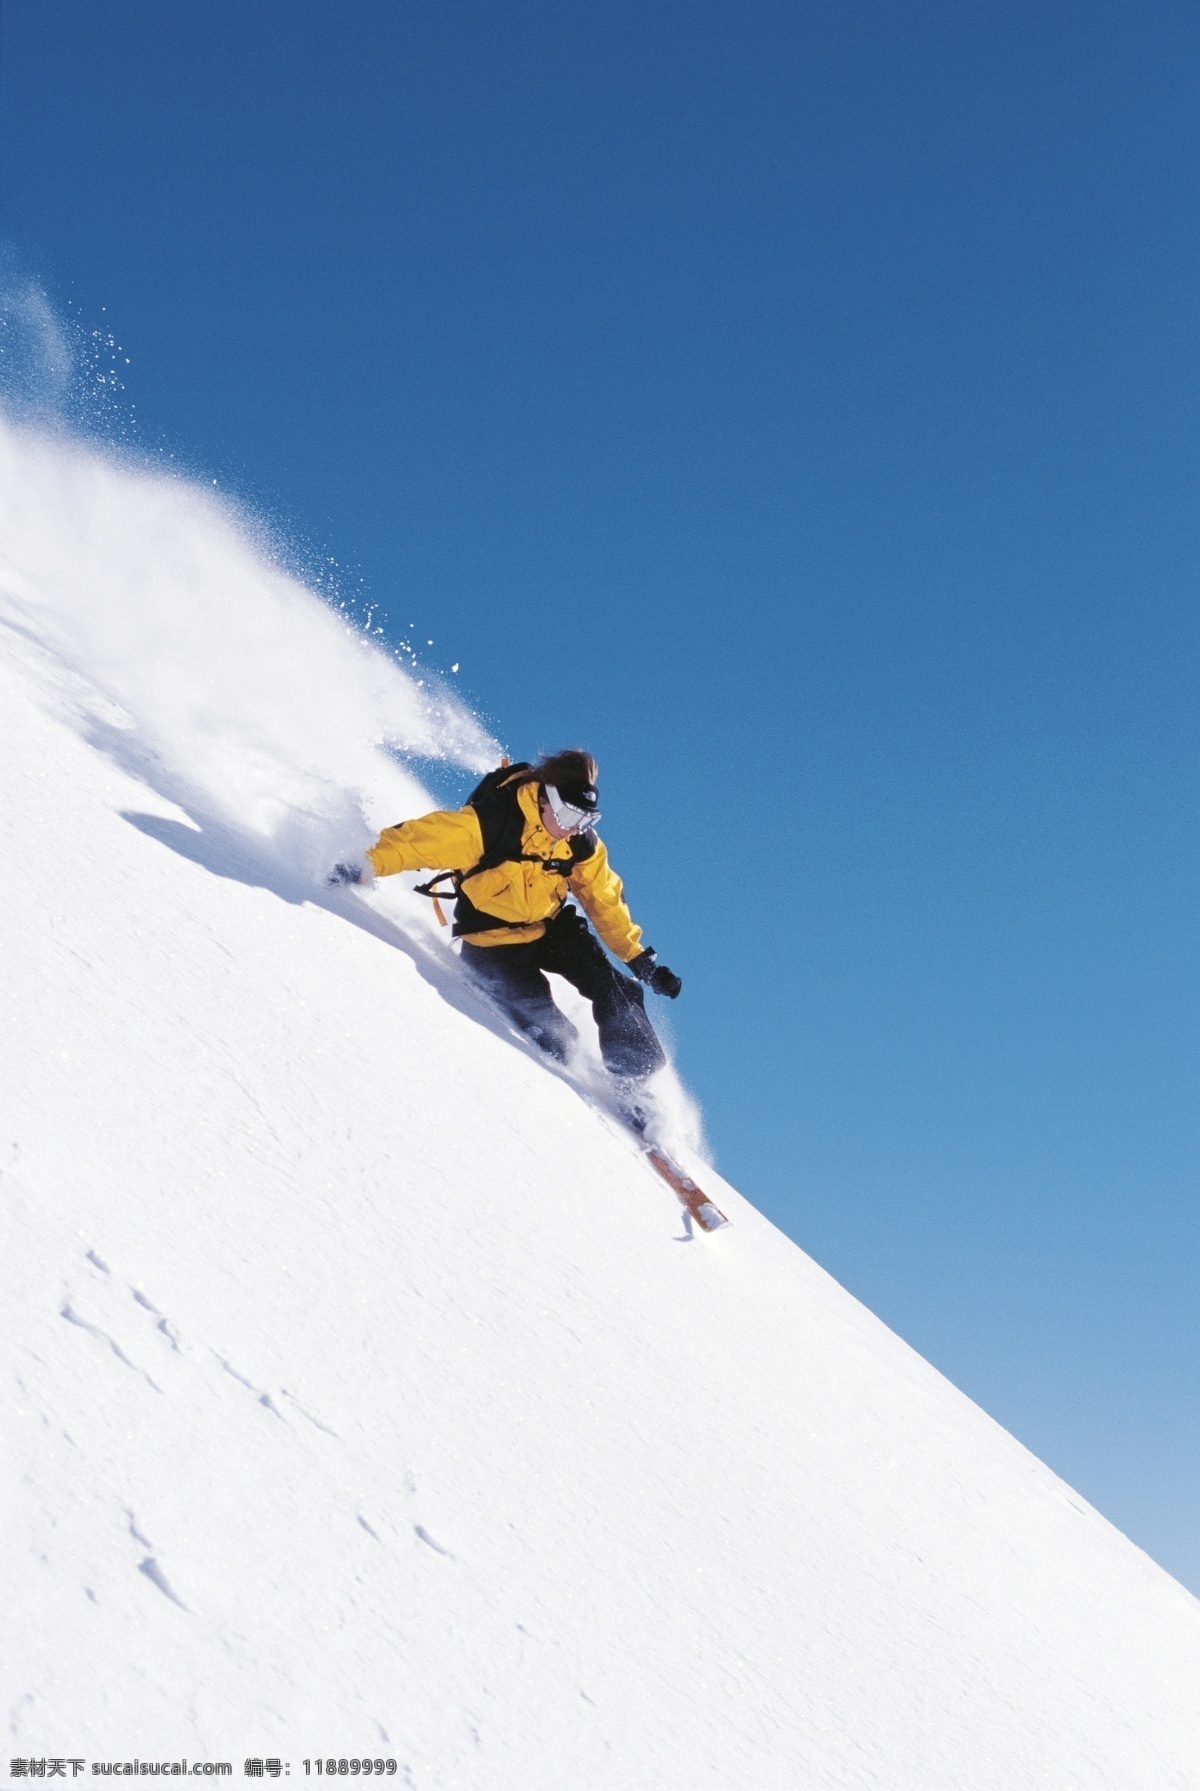 急速 下滑 运动员 高清 雪地运动 划雪运动 极限运动 体育项目 速度 运动图片 生活百科 雪山 风景 摄影图片 高清图片 体育运动 白色